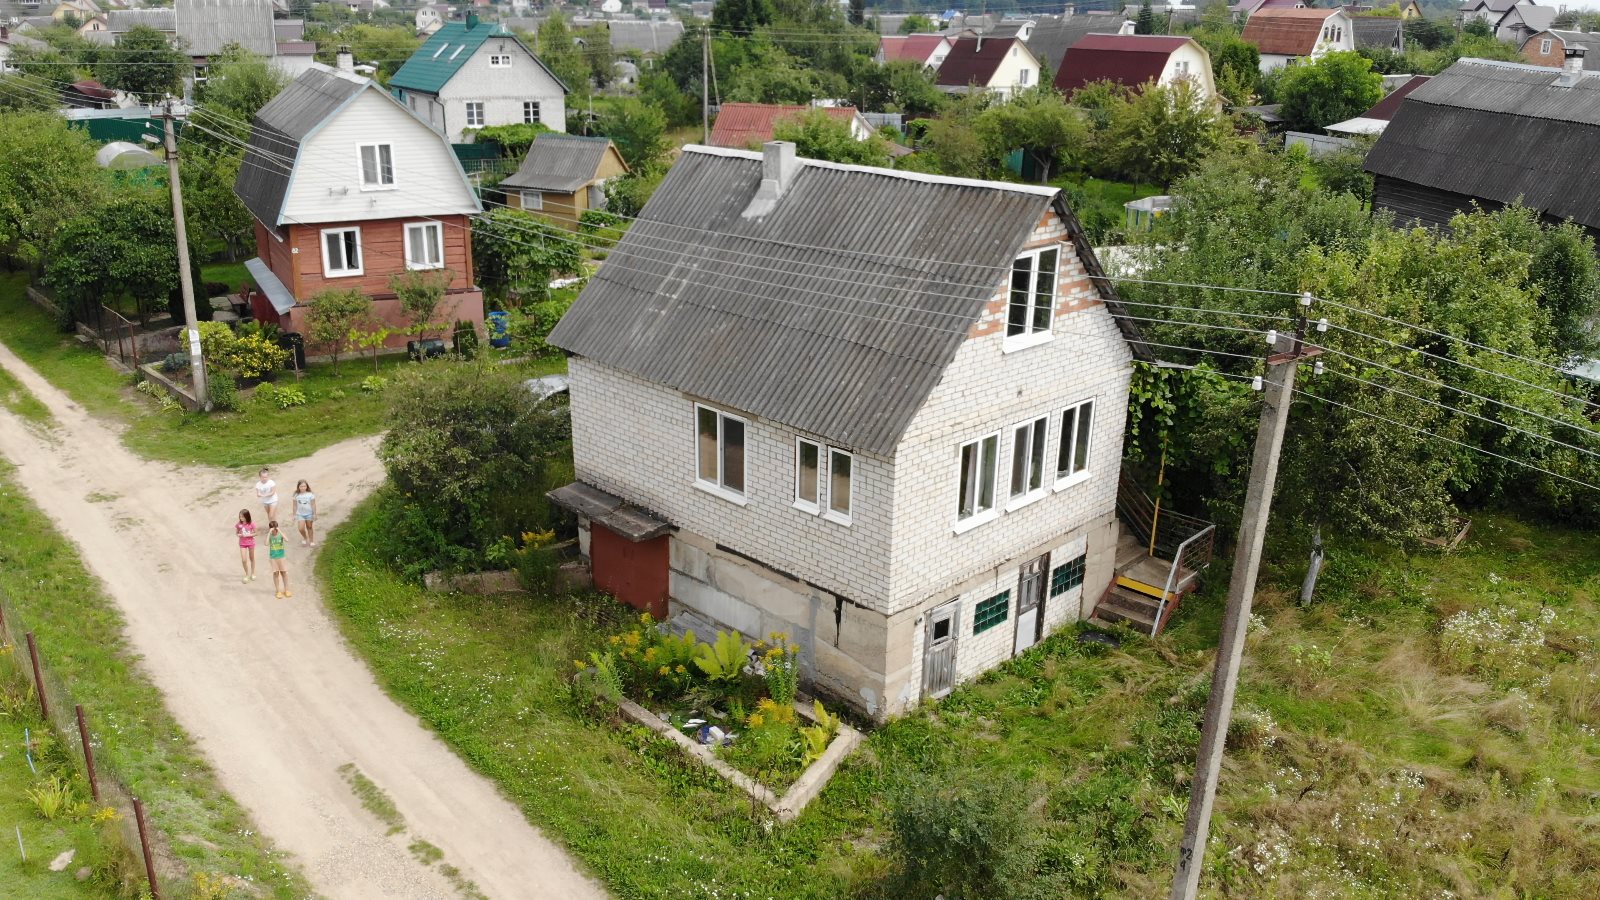 Продам дом в с/т ИВУШКА – 87, от Минска 21 км. - фотография